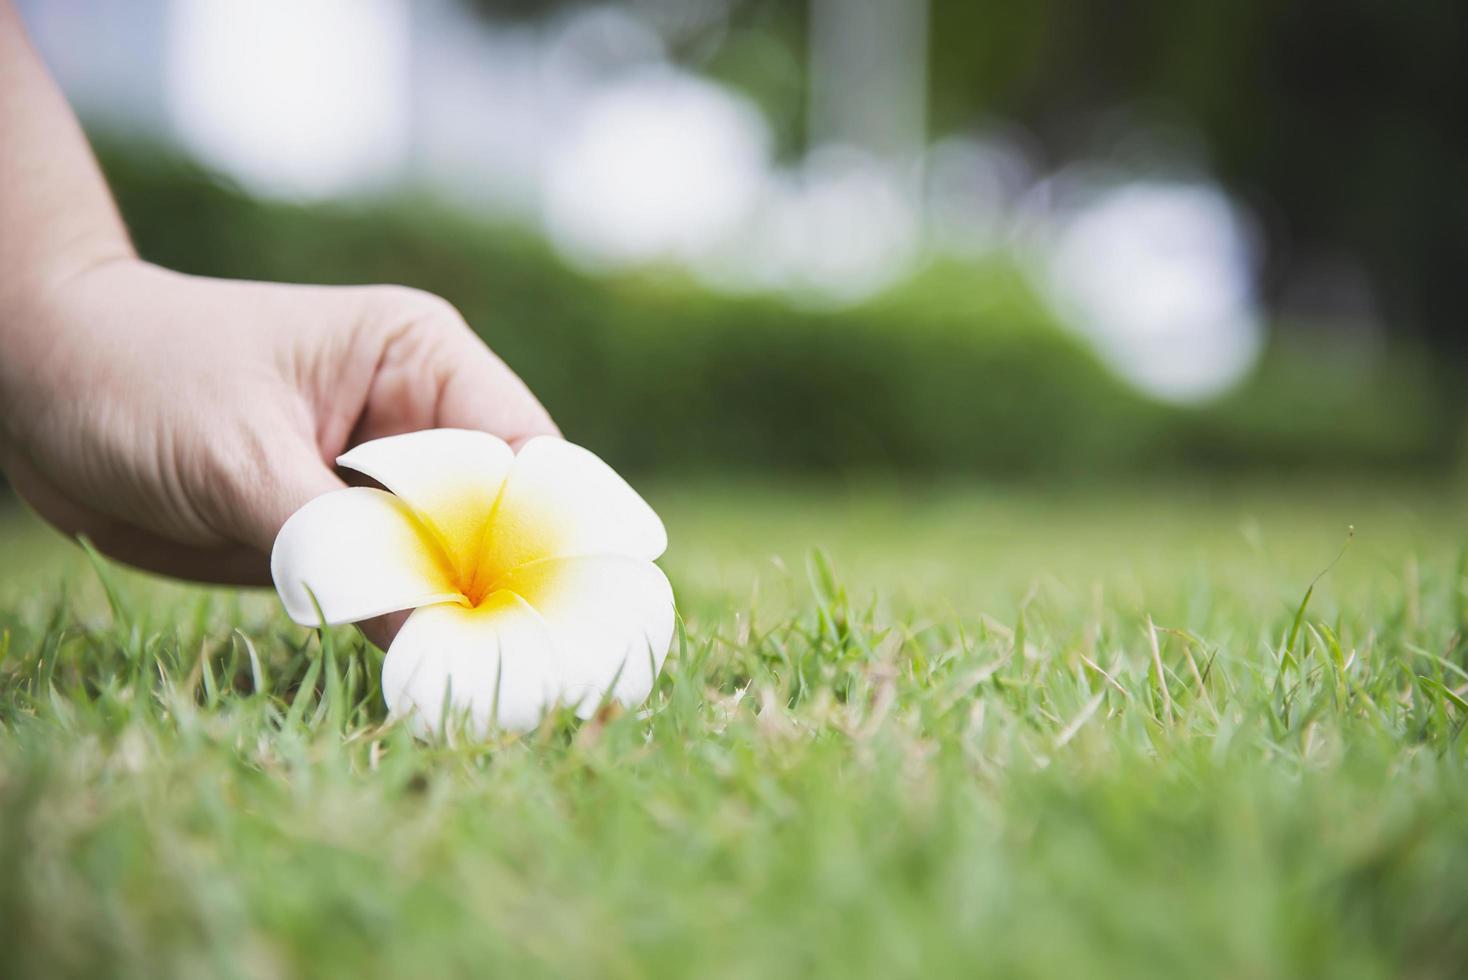 dame main cueillir fleur de plumeria du sol d'herbe verte - personnes avec un concept de belle nature photo